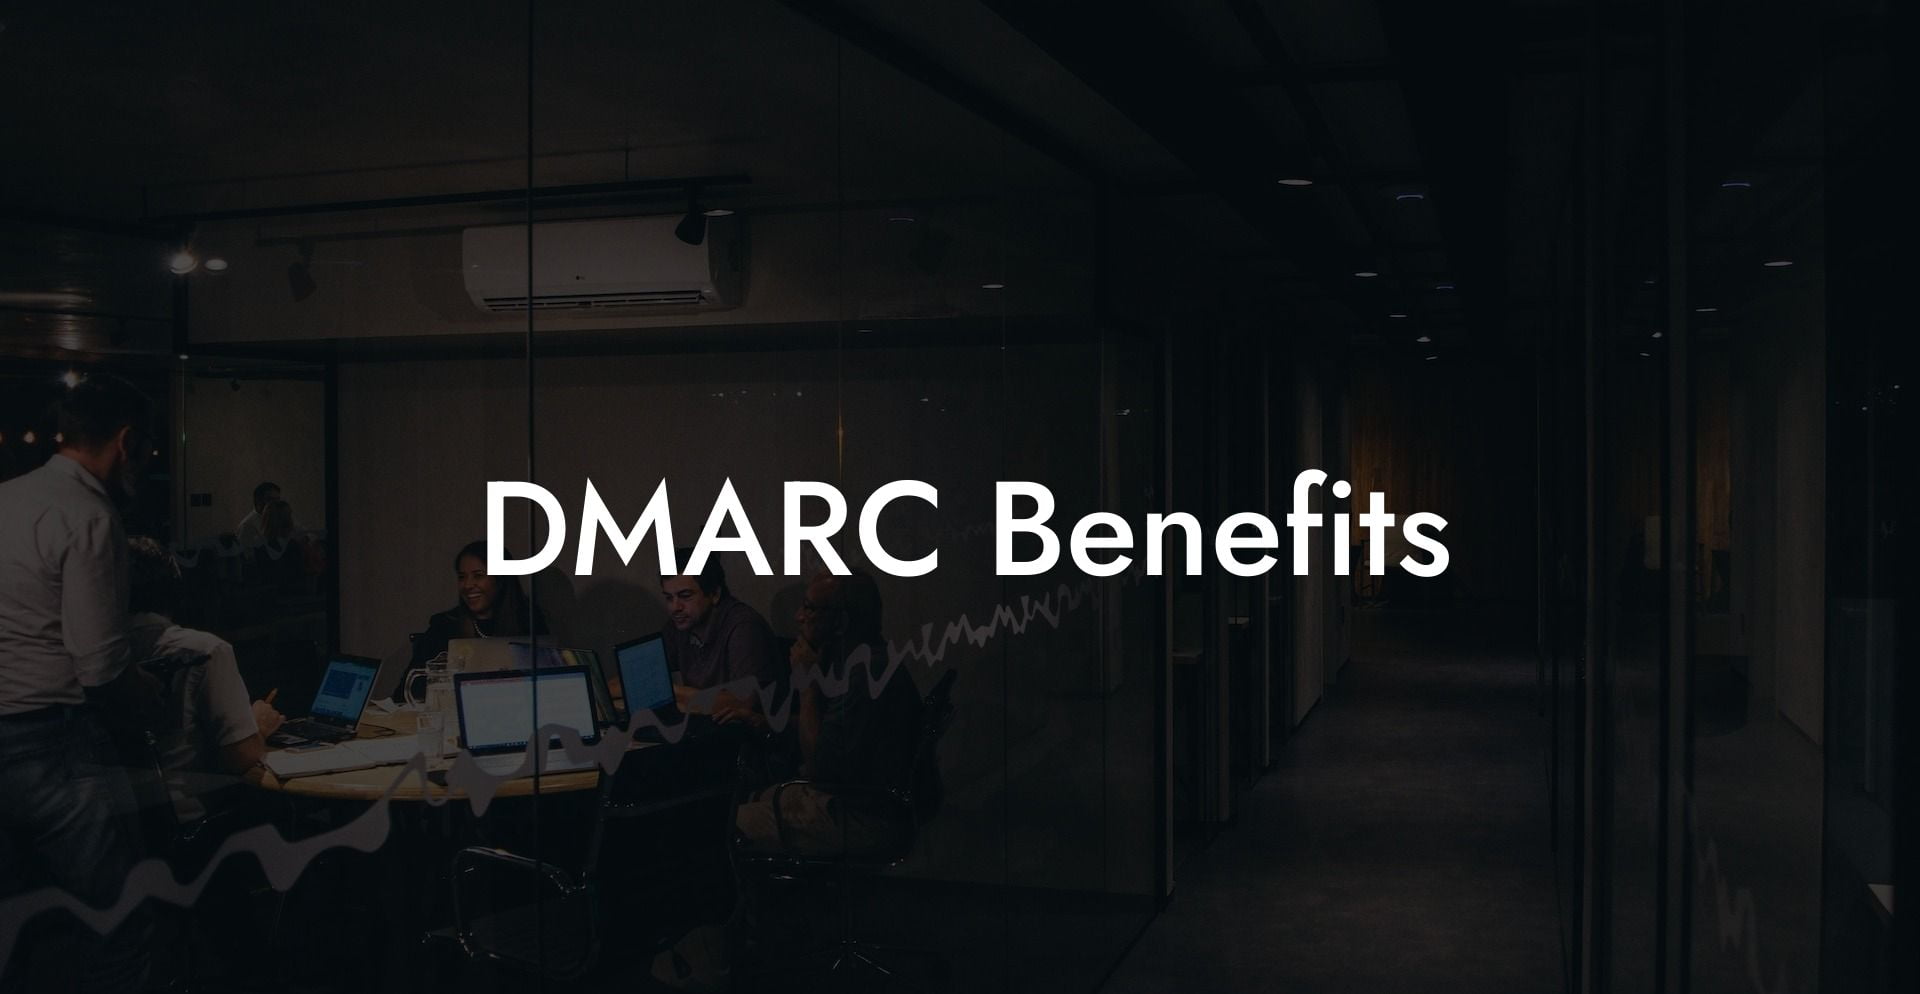 DMARC Benefits